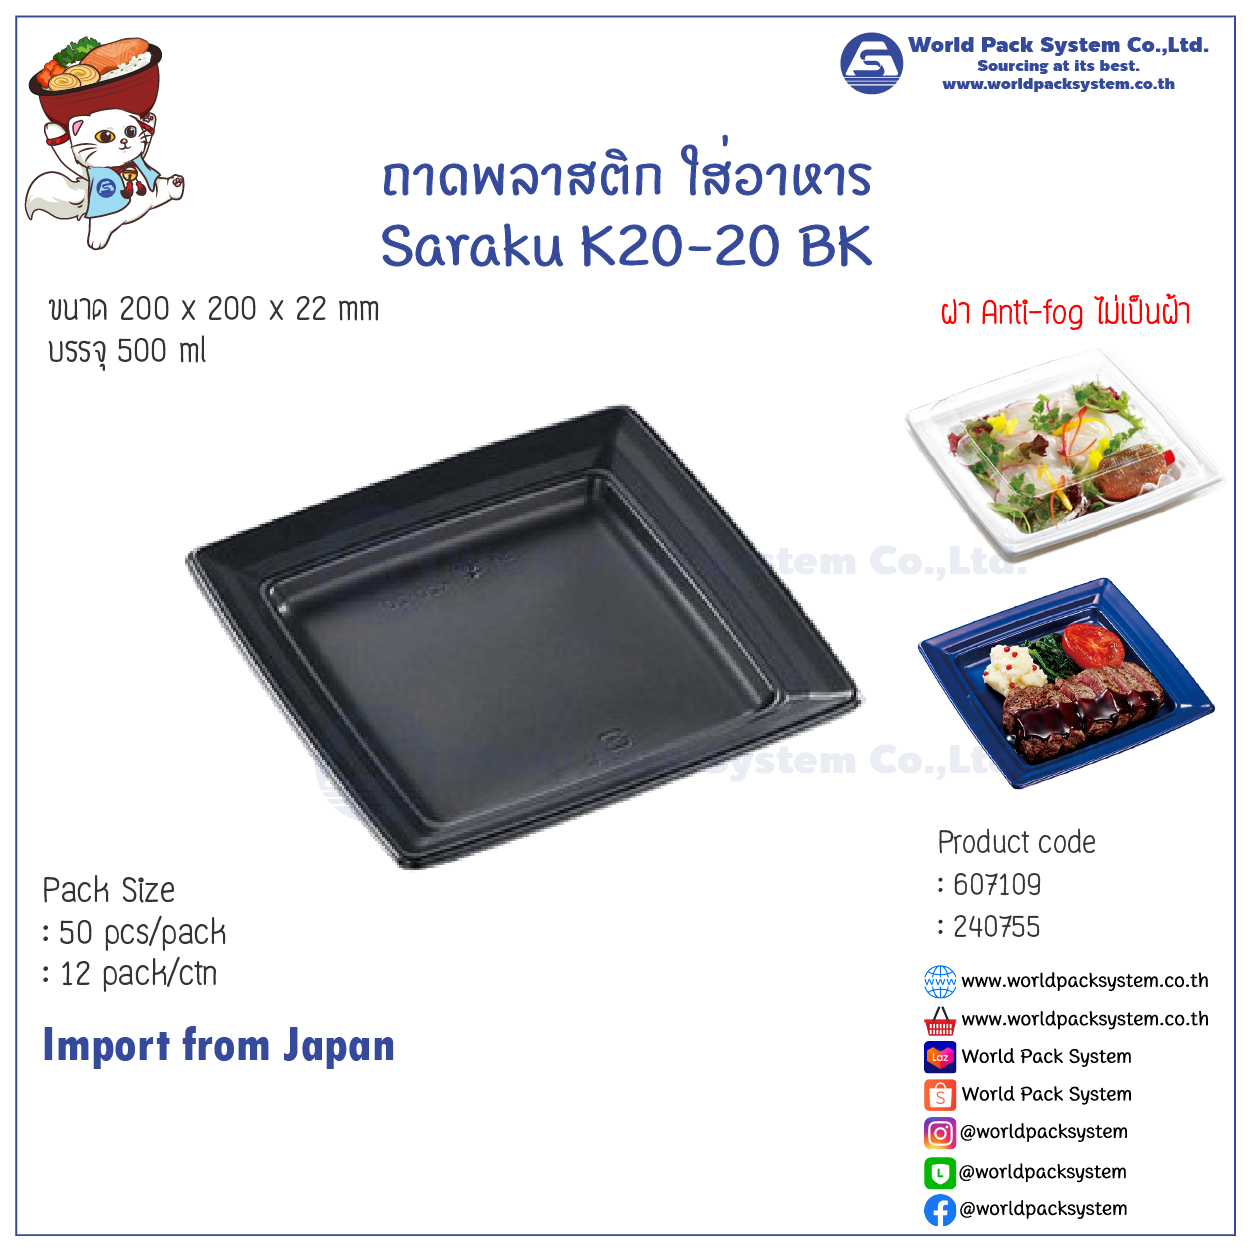 ถาดใส่อาหาร ถาดพลาสติก Saraku K20-20 BK (50 ชุด)